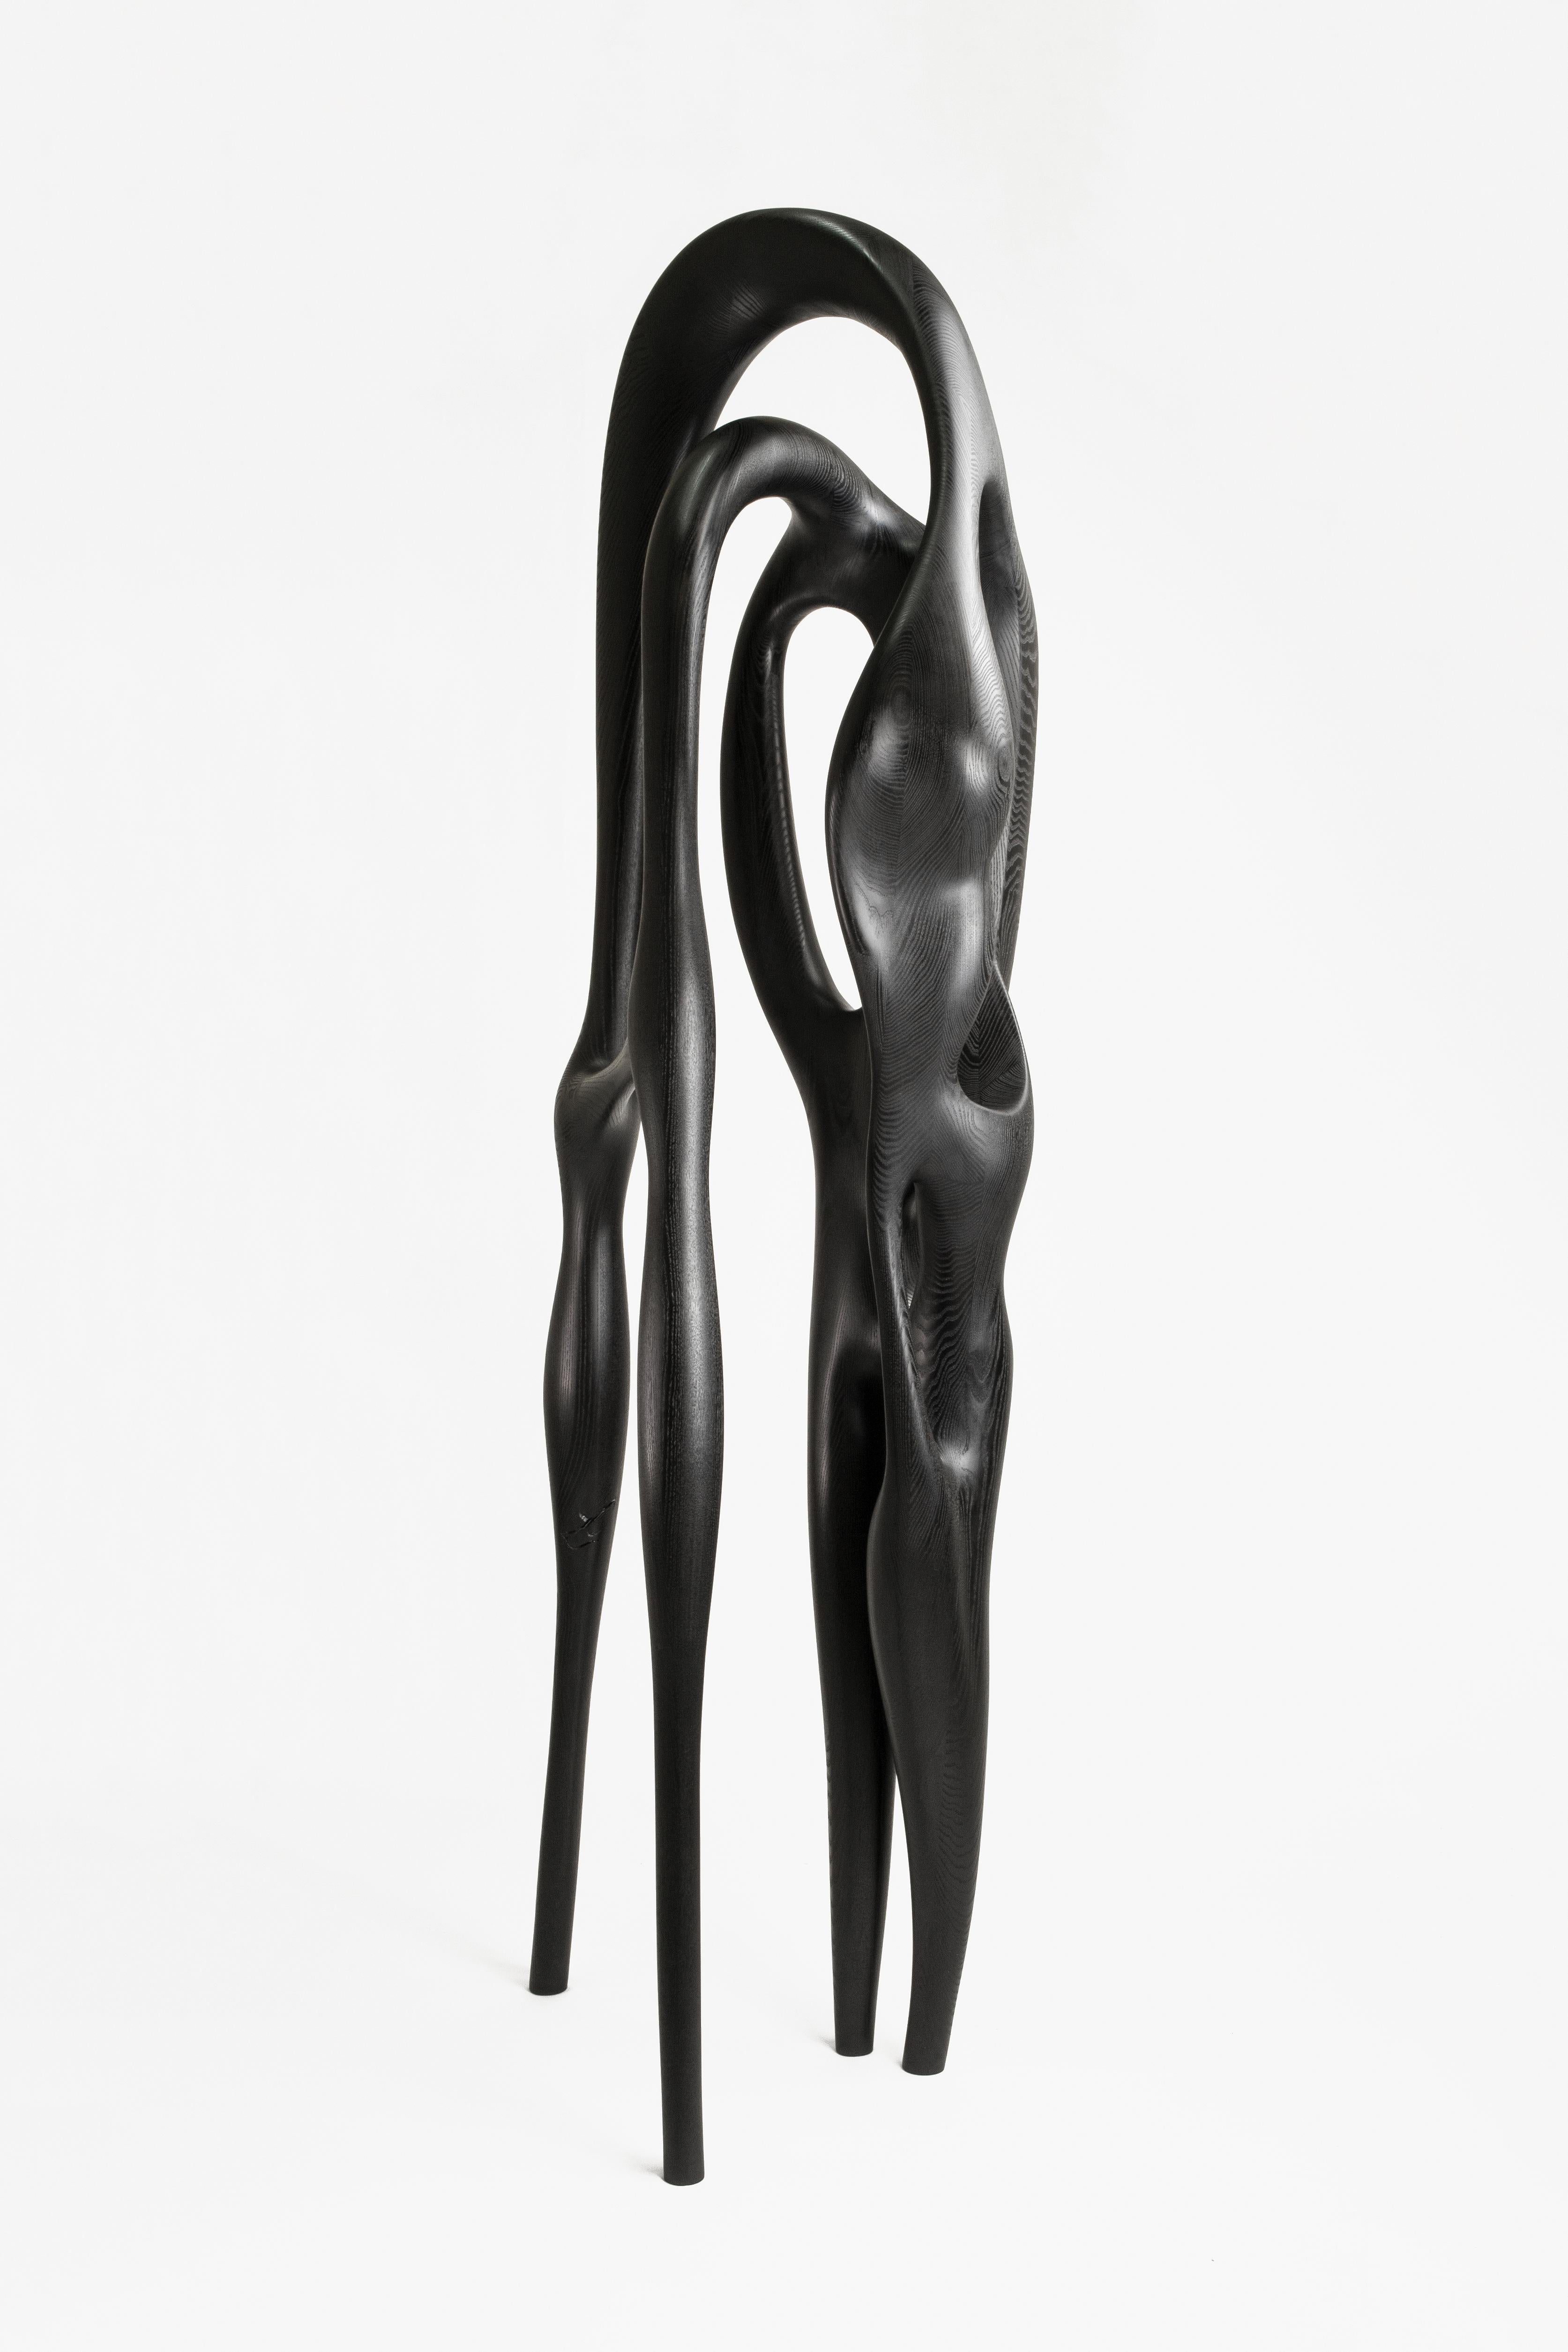 Drift Sculpture No 2 Hand-sculpted by Maxime Goléo 2